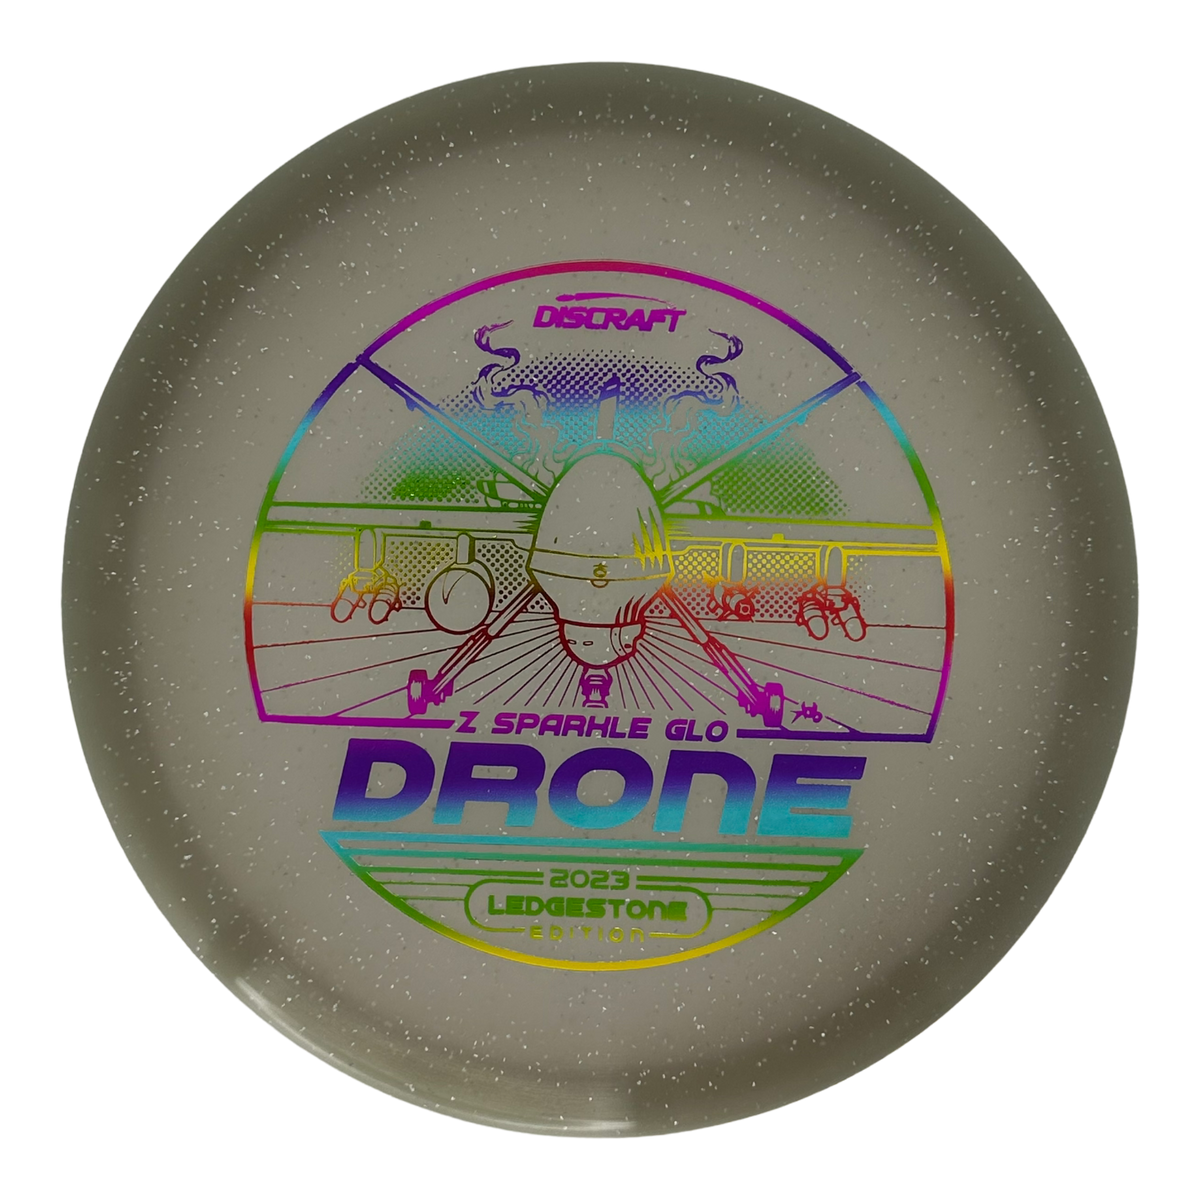 Discraft  Z Sparkle Glo Drone - Ledgestone 2 (2023)